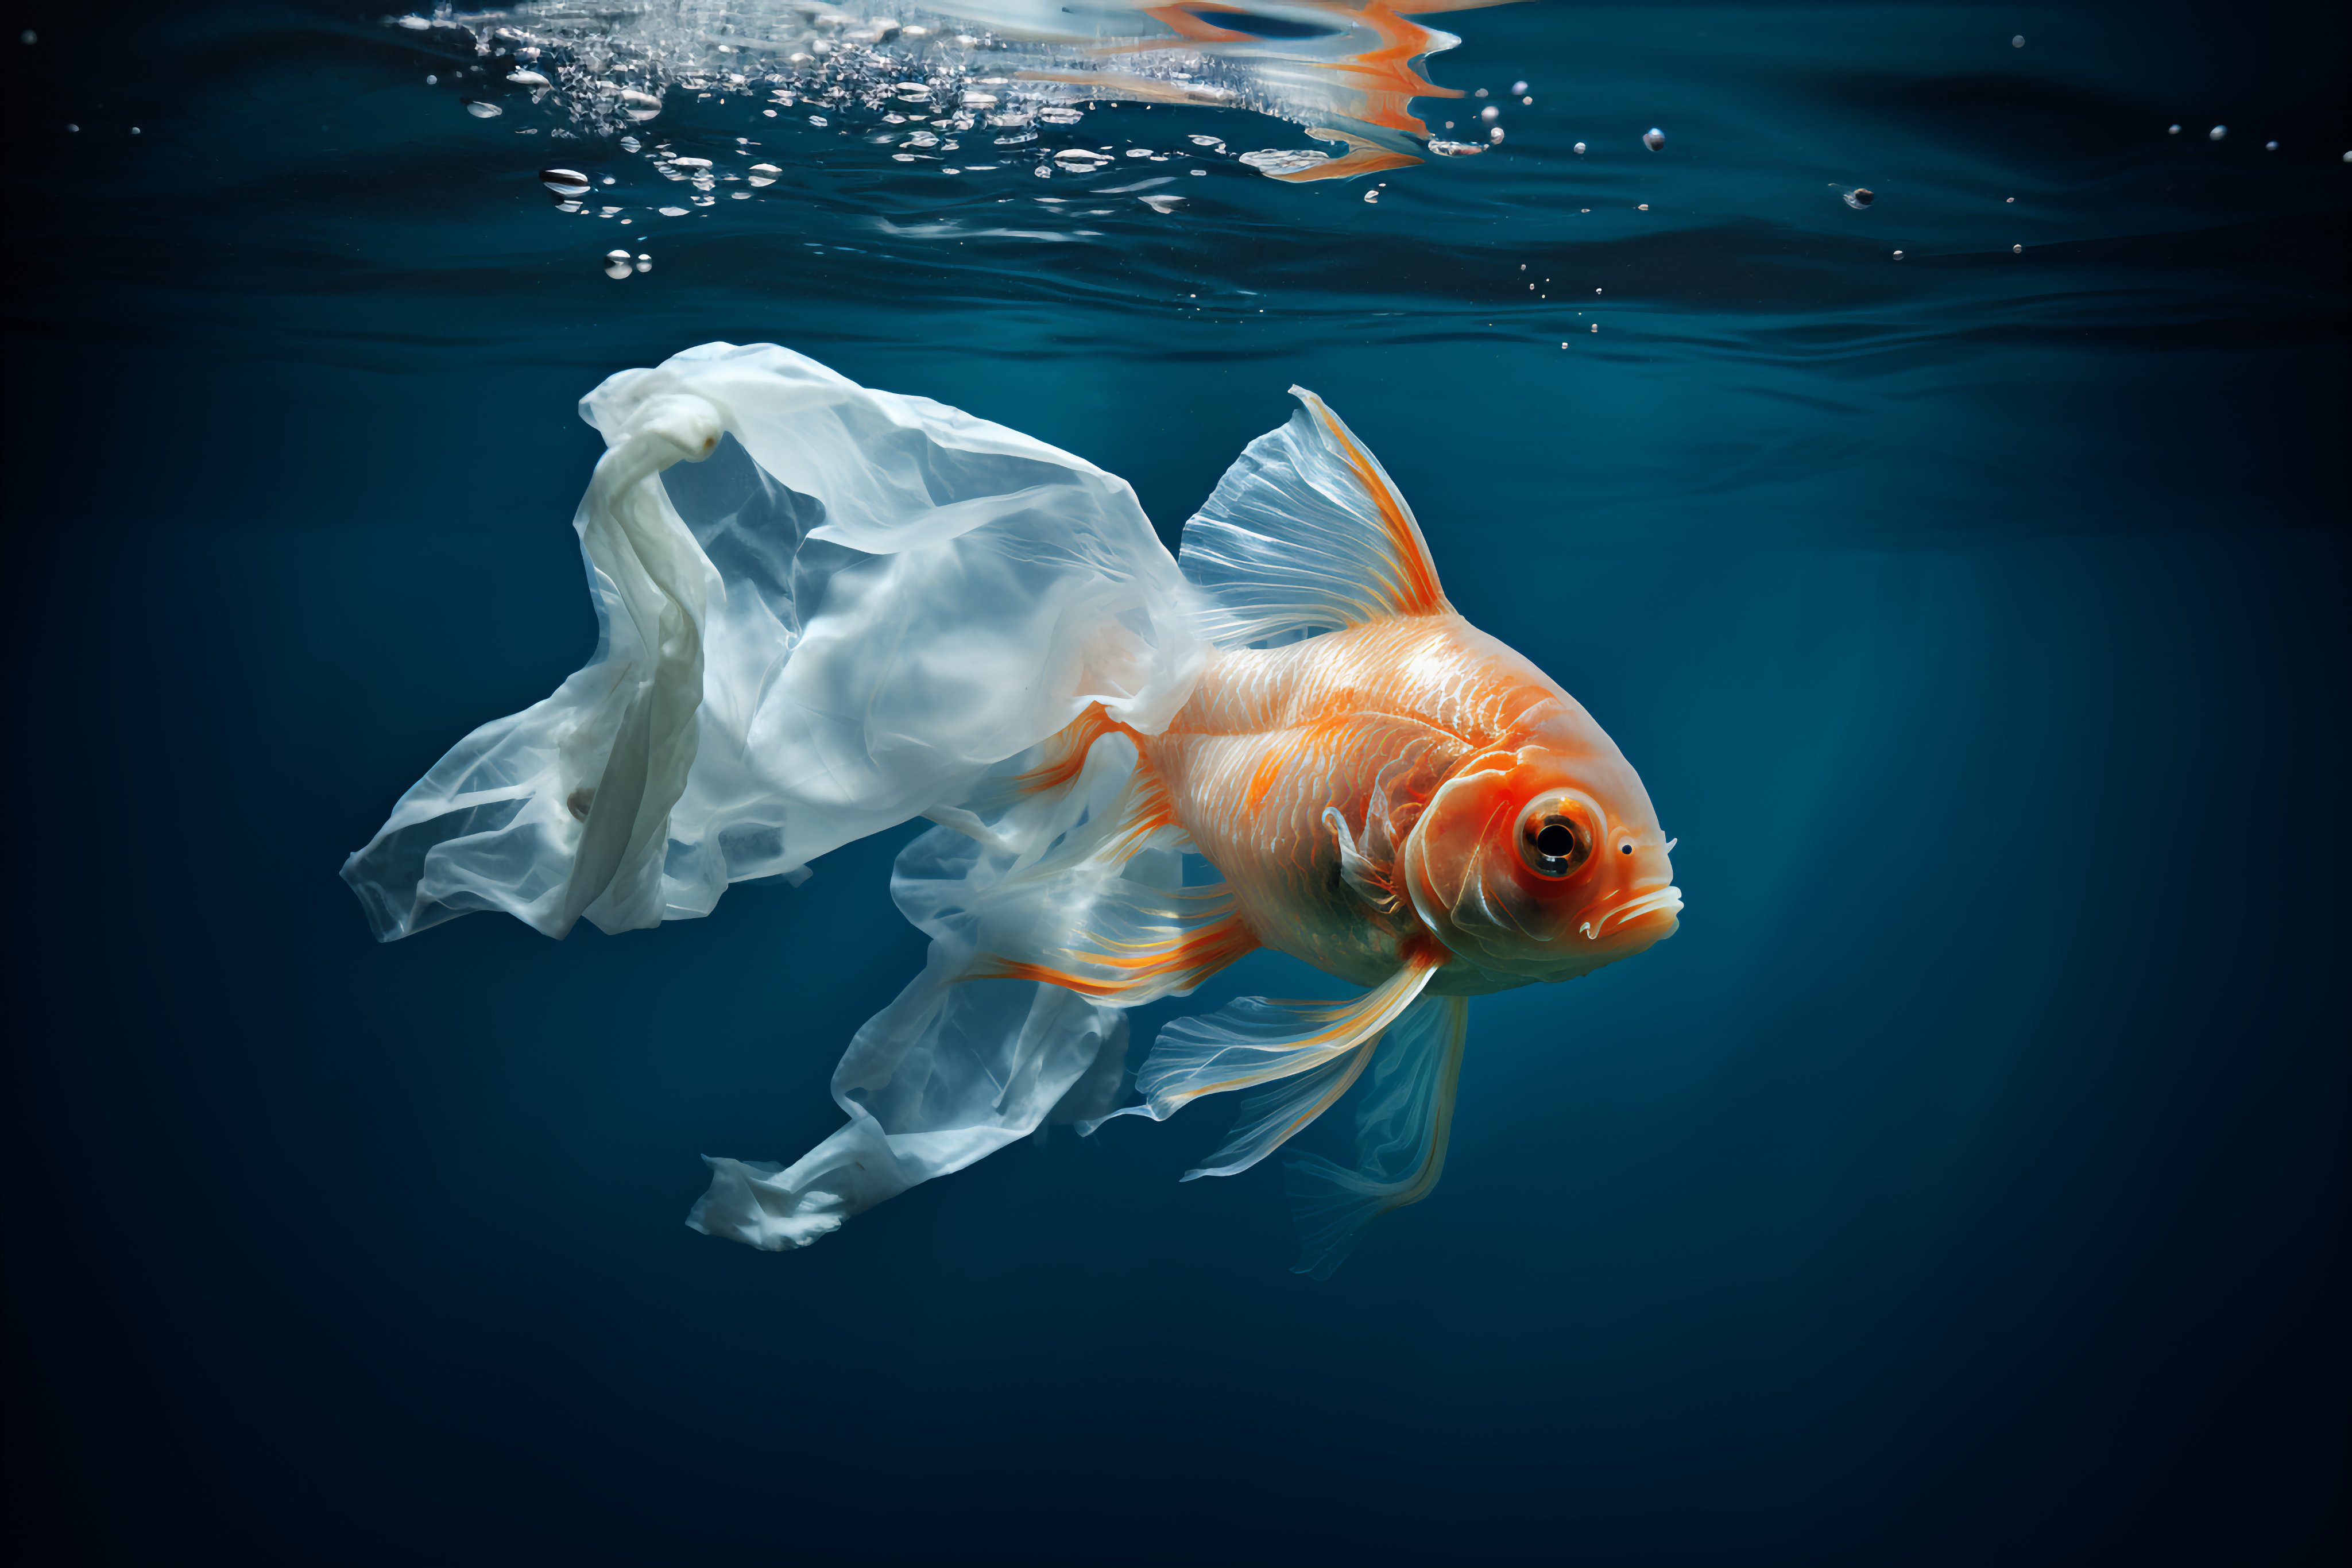 Linus ○ᴗ○ Ekenstam on X: Plastic Pollution Fish To illustrate